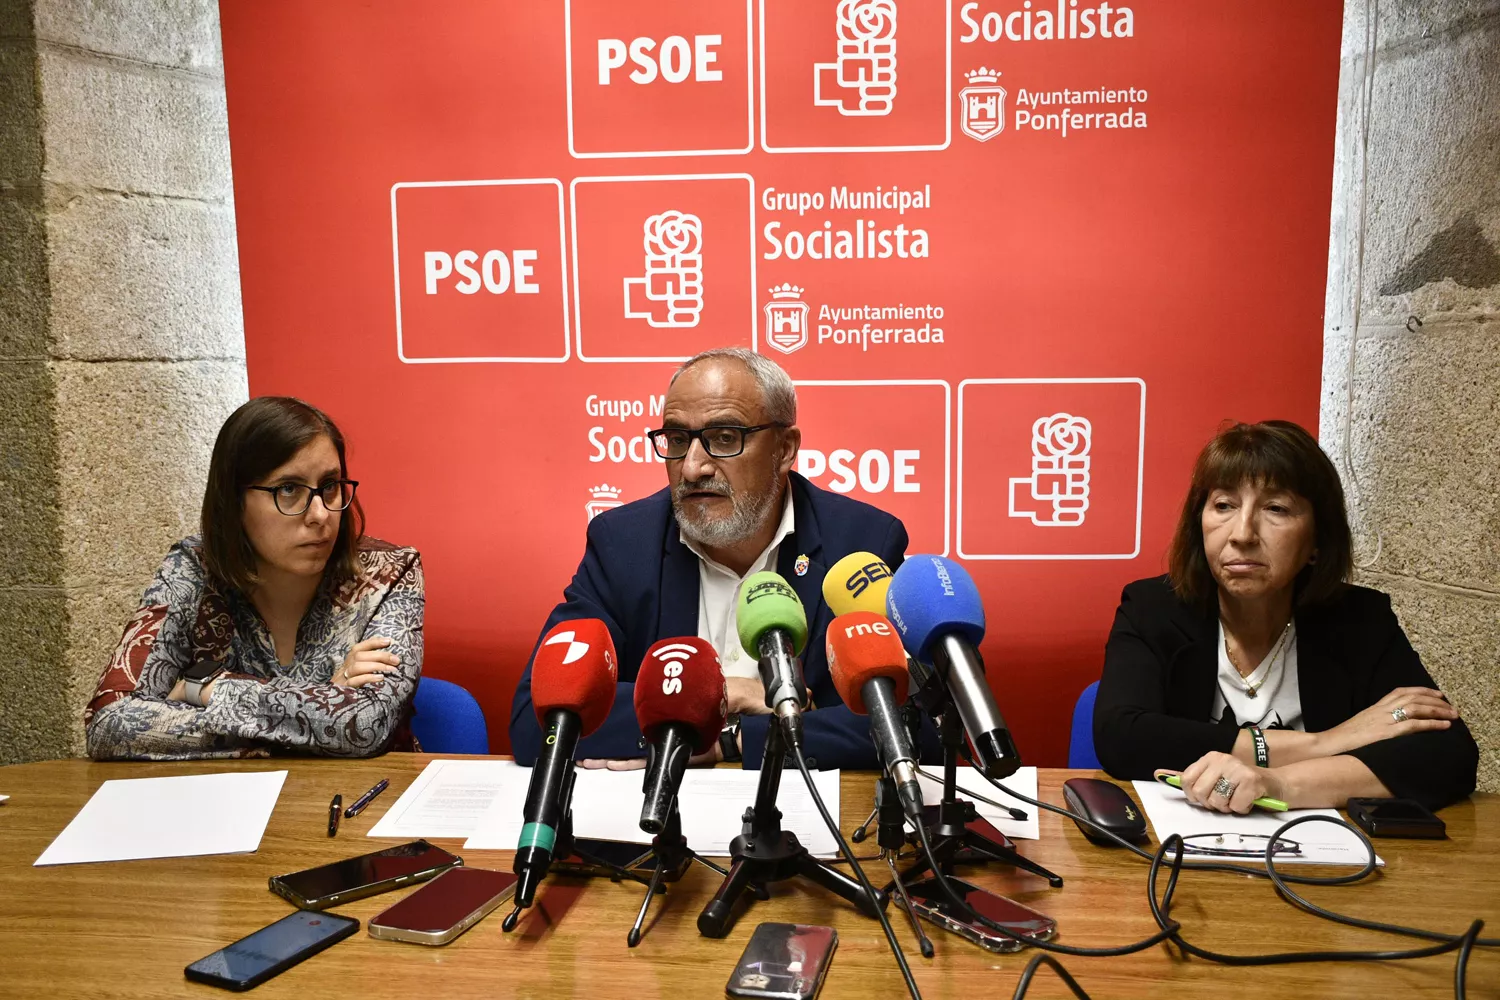 Olegario Ramón acusa a Marco Morala de haber "engañado" al electorado en solo un año de "derroche y paralización" en Ponferrada